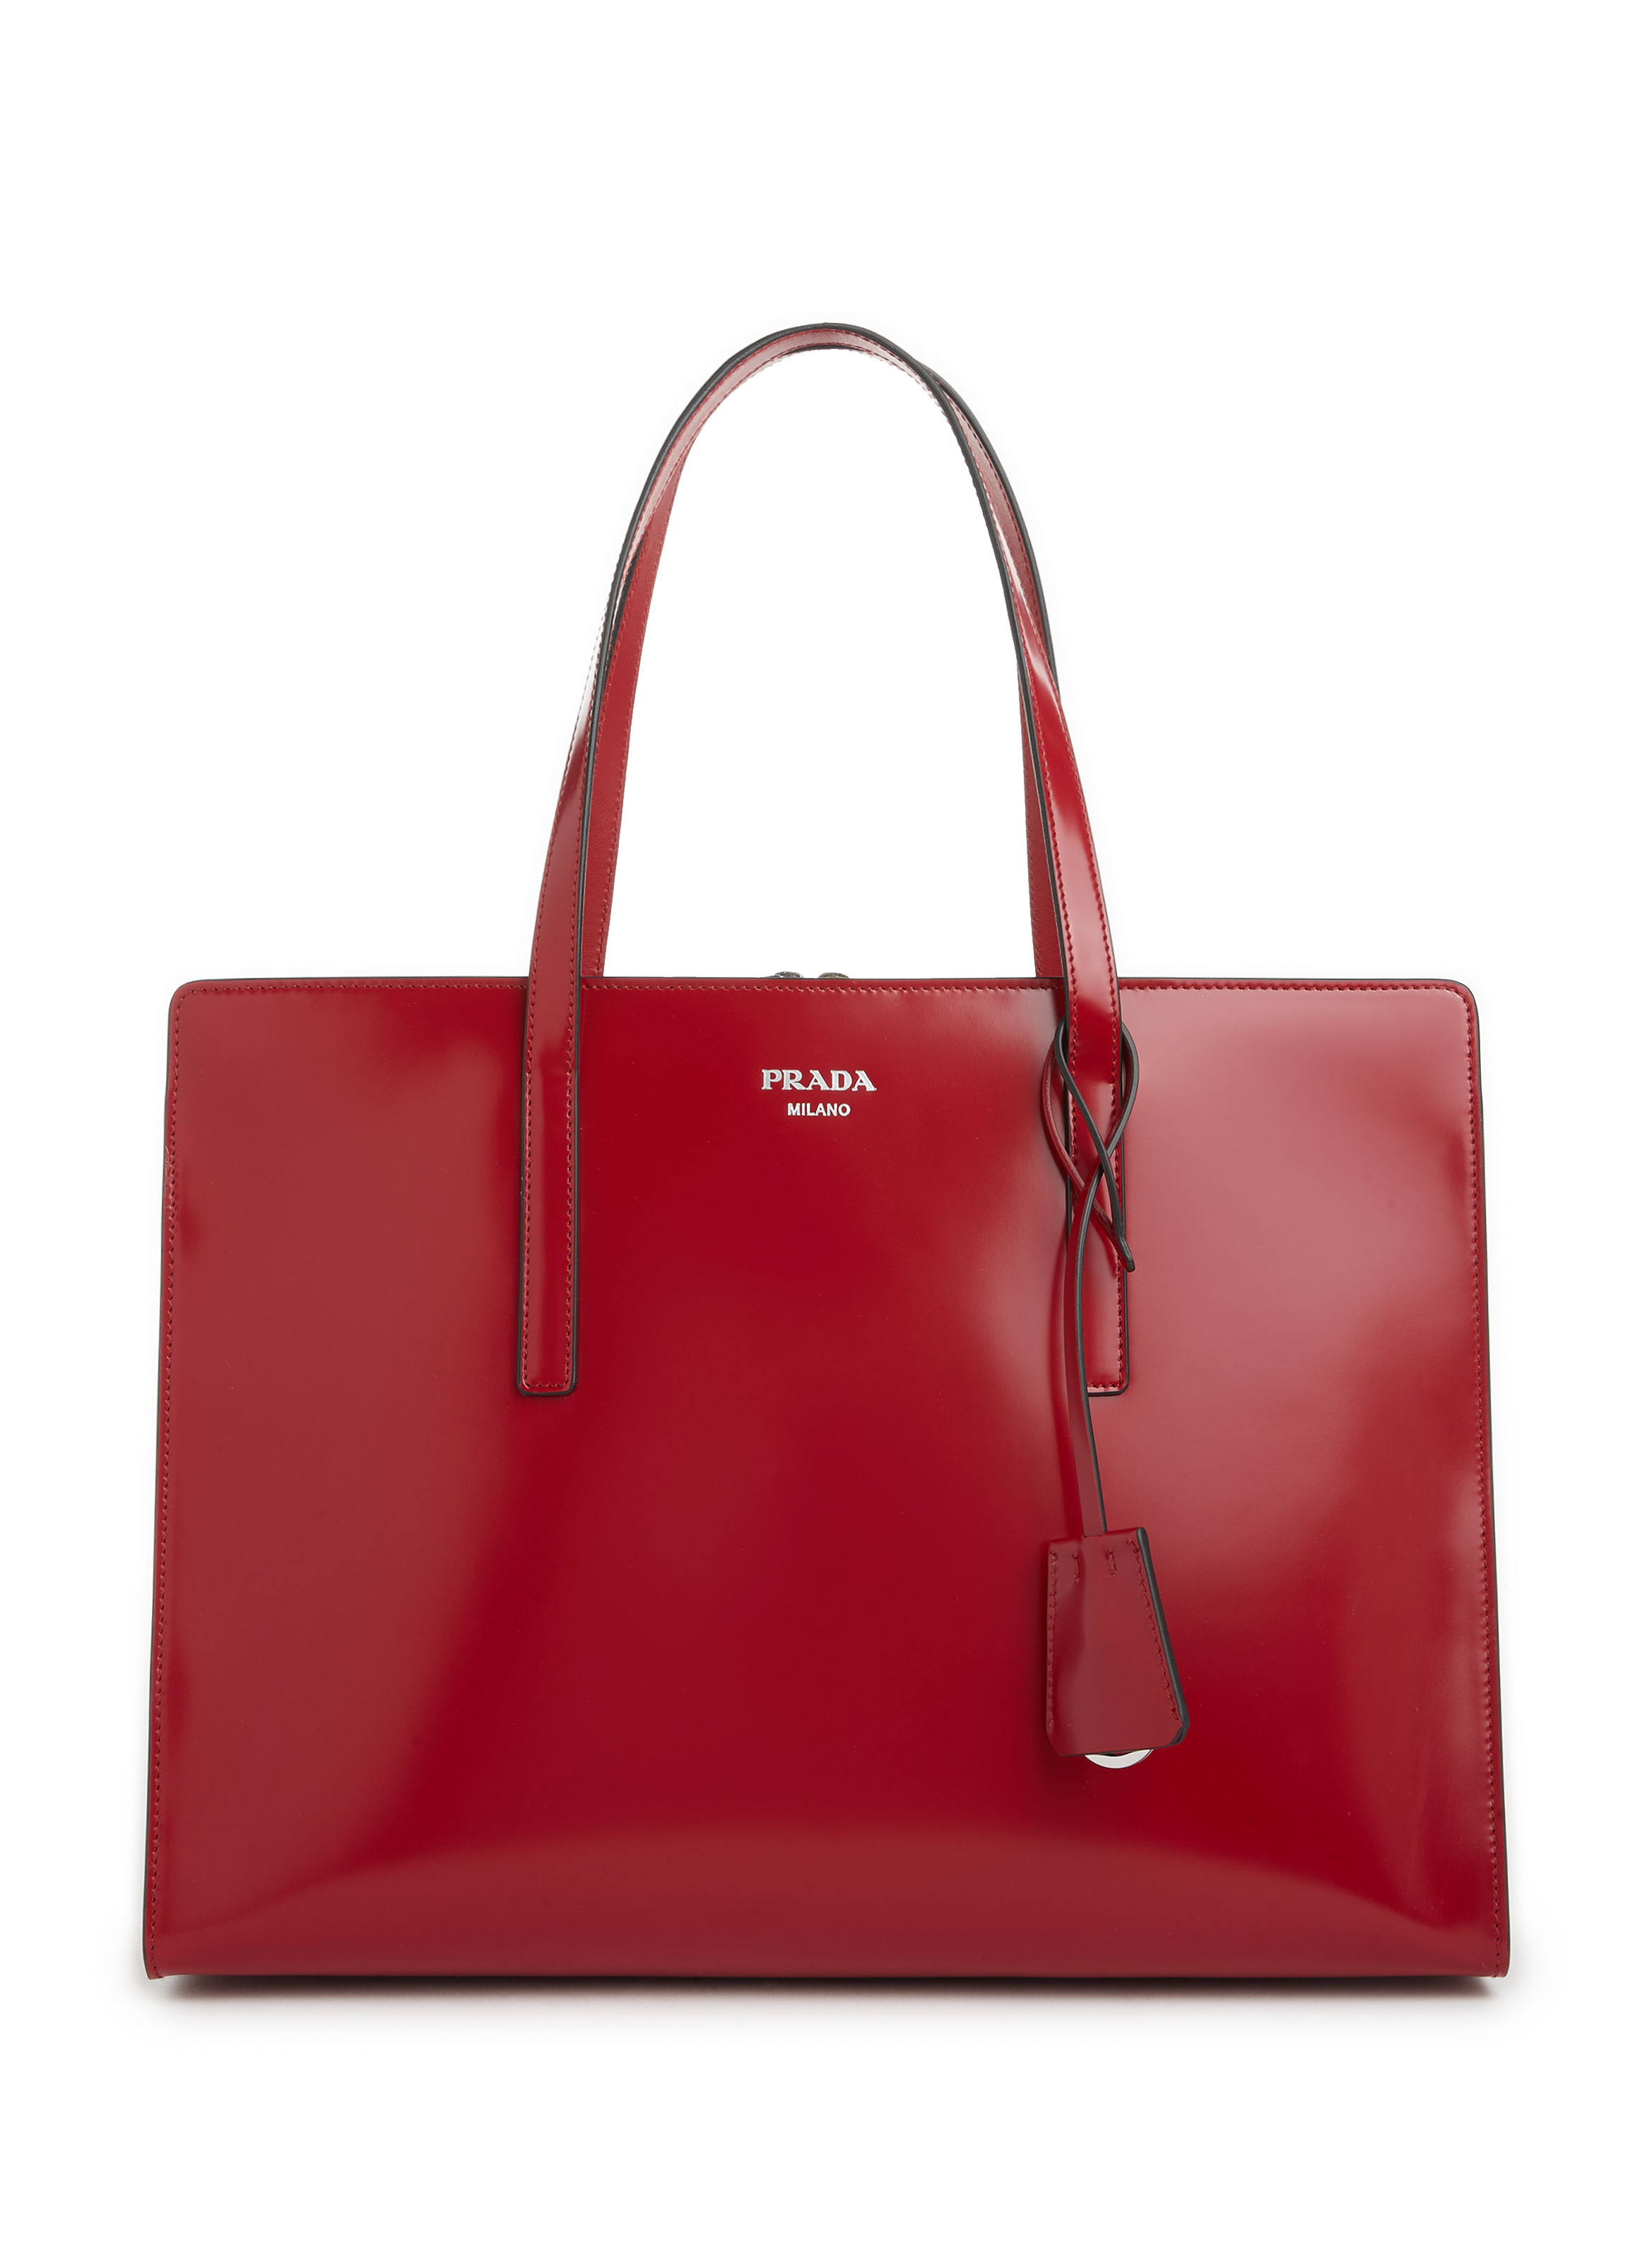 PRADA RED DIAGRAMME SHOULDER BAG HANDBAG RED LEATHER | eBay